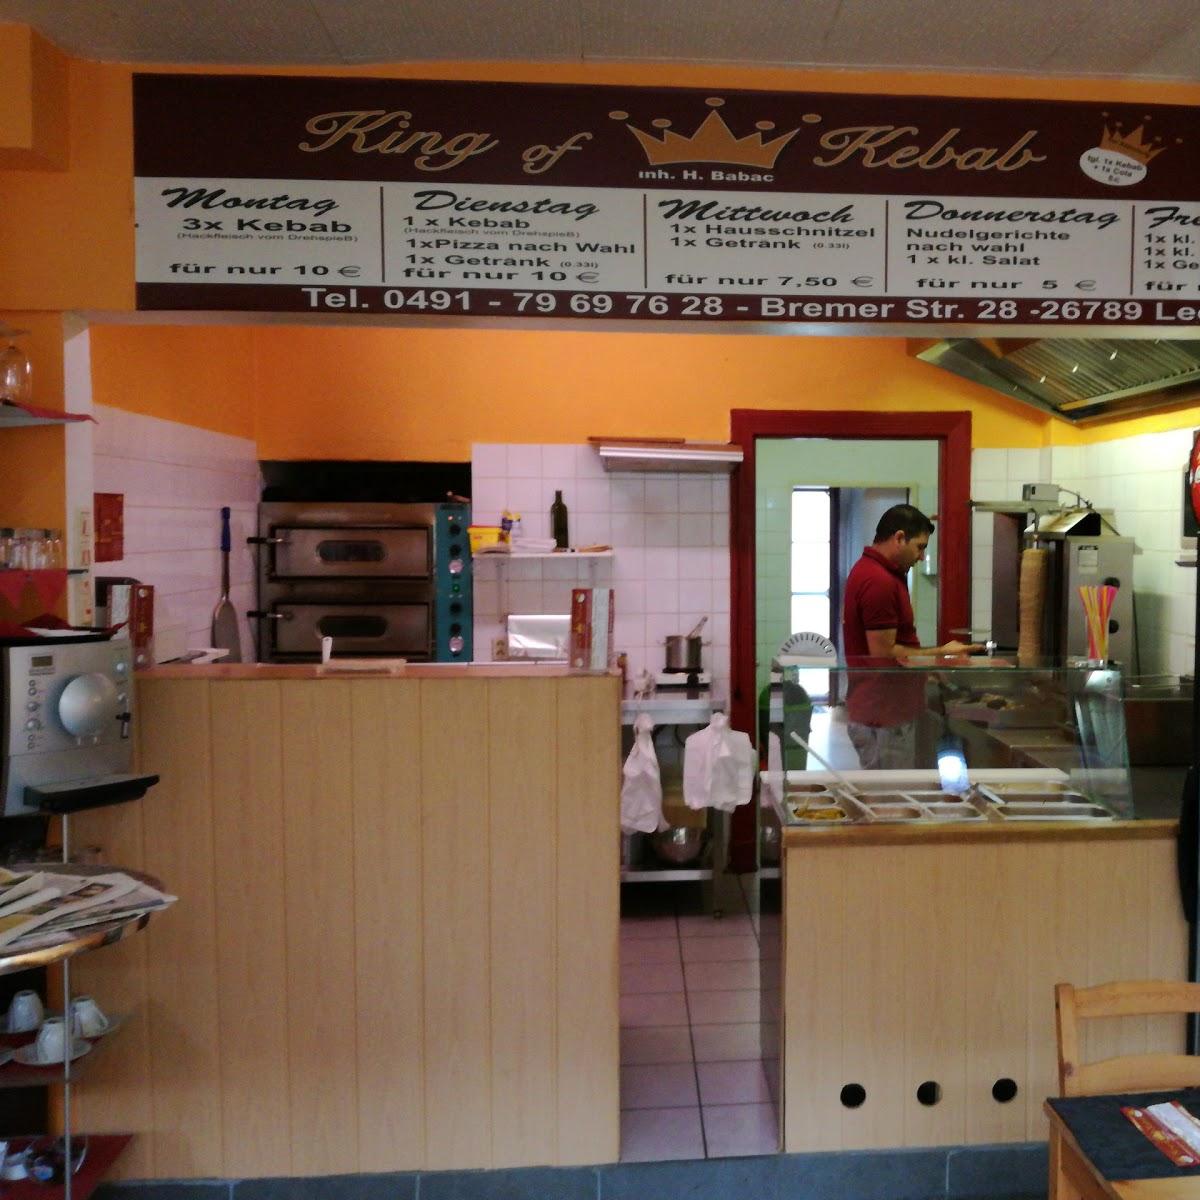 Restaurant "King of Kebab" in Leer (Ostfriesland)